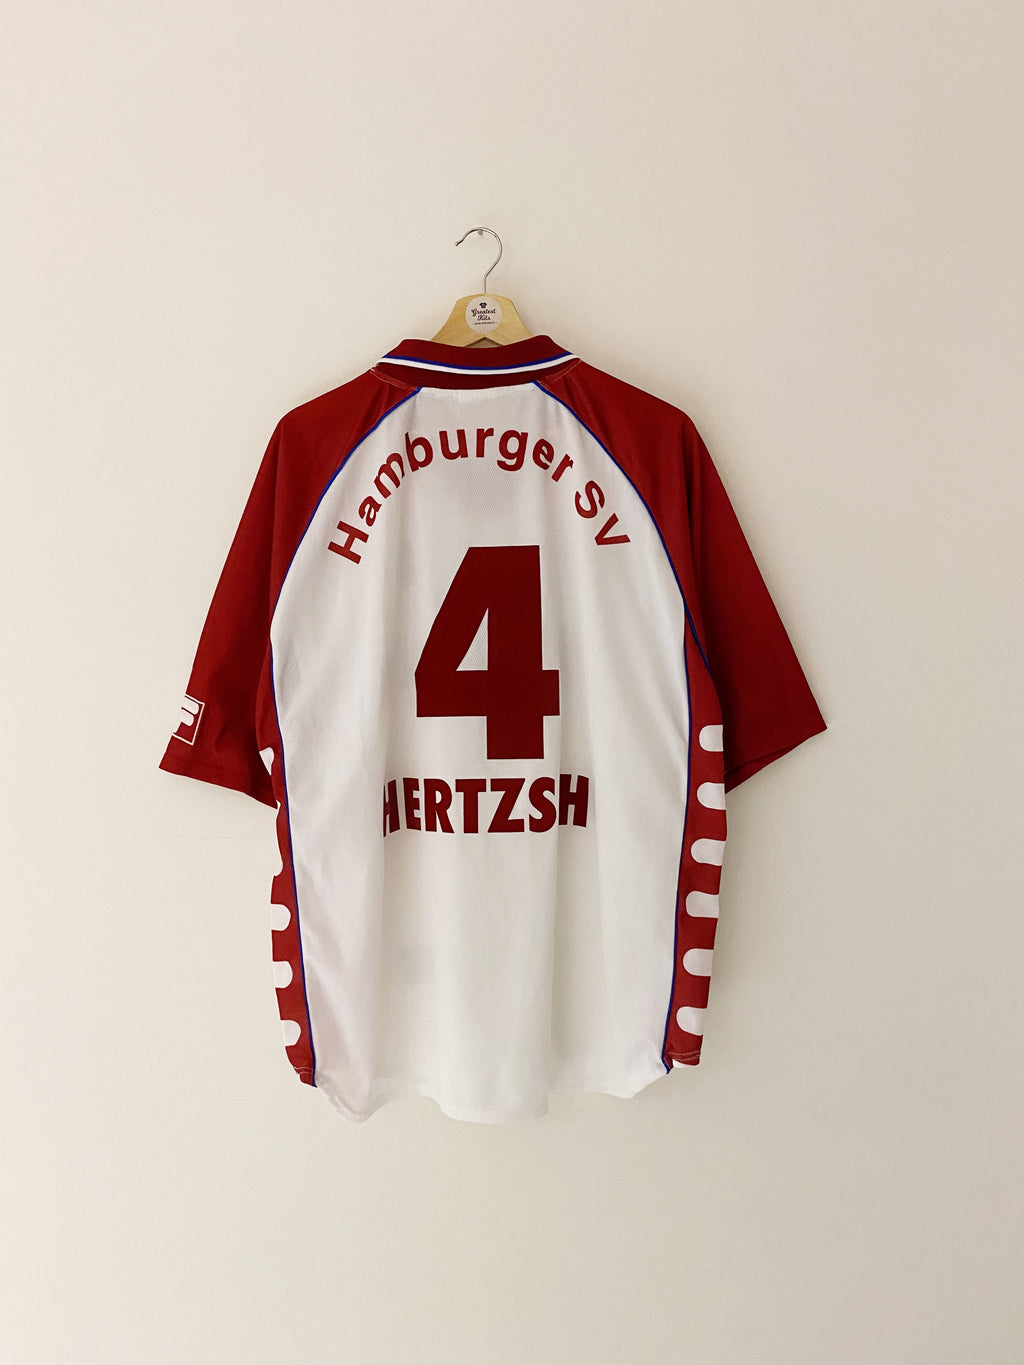 1999/00 Camiseta local de Hamburgo Hertzsch # 4 (XL) 8.5/10 